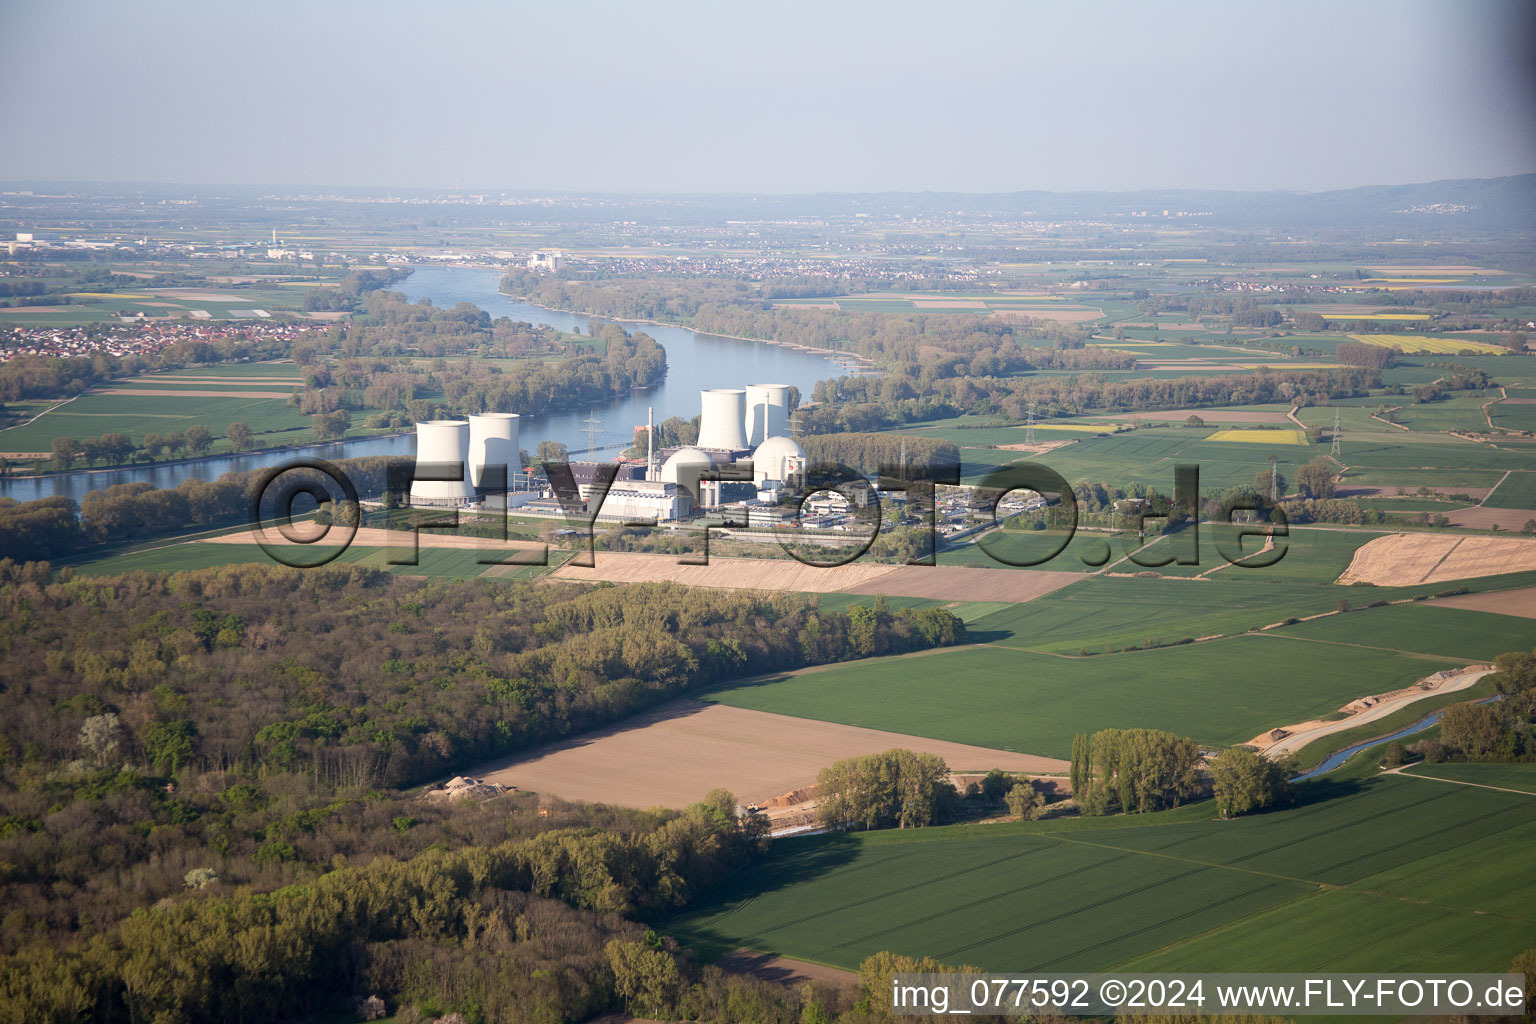 Luftbild von Reaktorblöcke, Kühlturmbauwerke und Anlagen des AKW - KKW Atomkraftwerk - Kernkraftwerk in Biblis im Bundesland Hessen, Deutschland